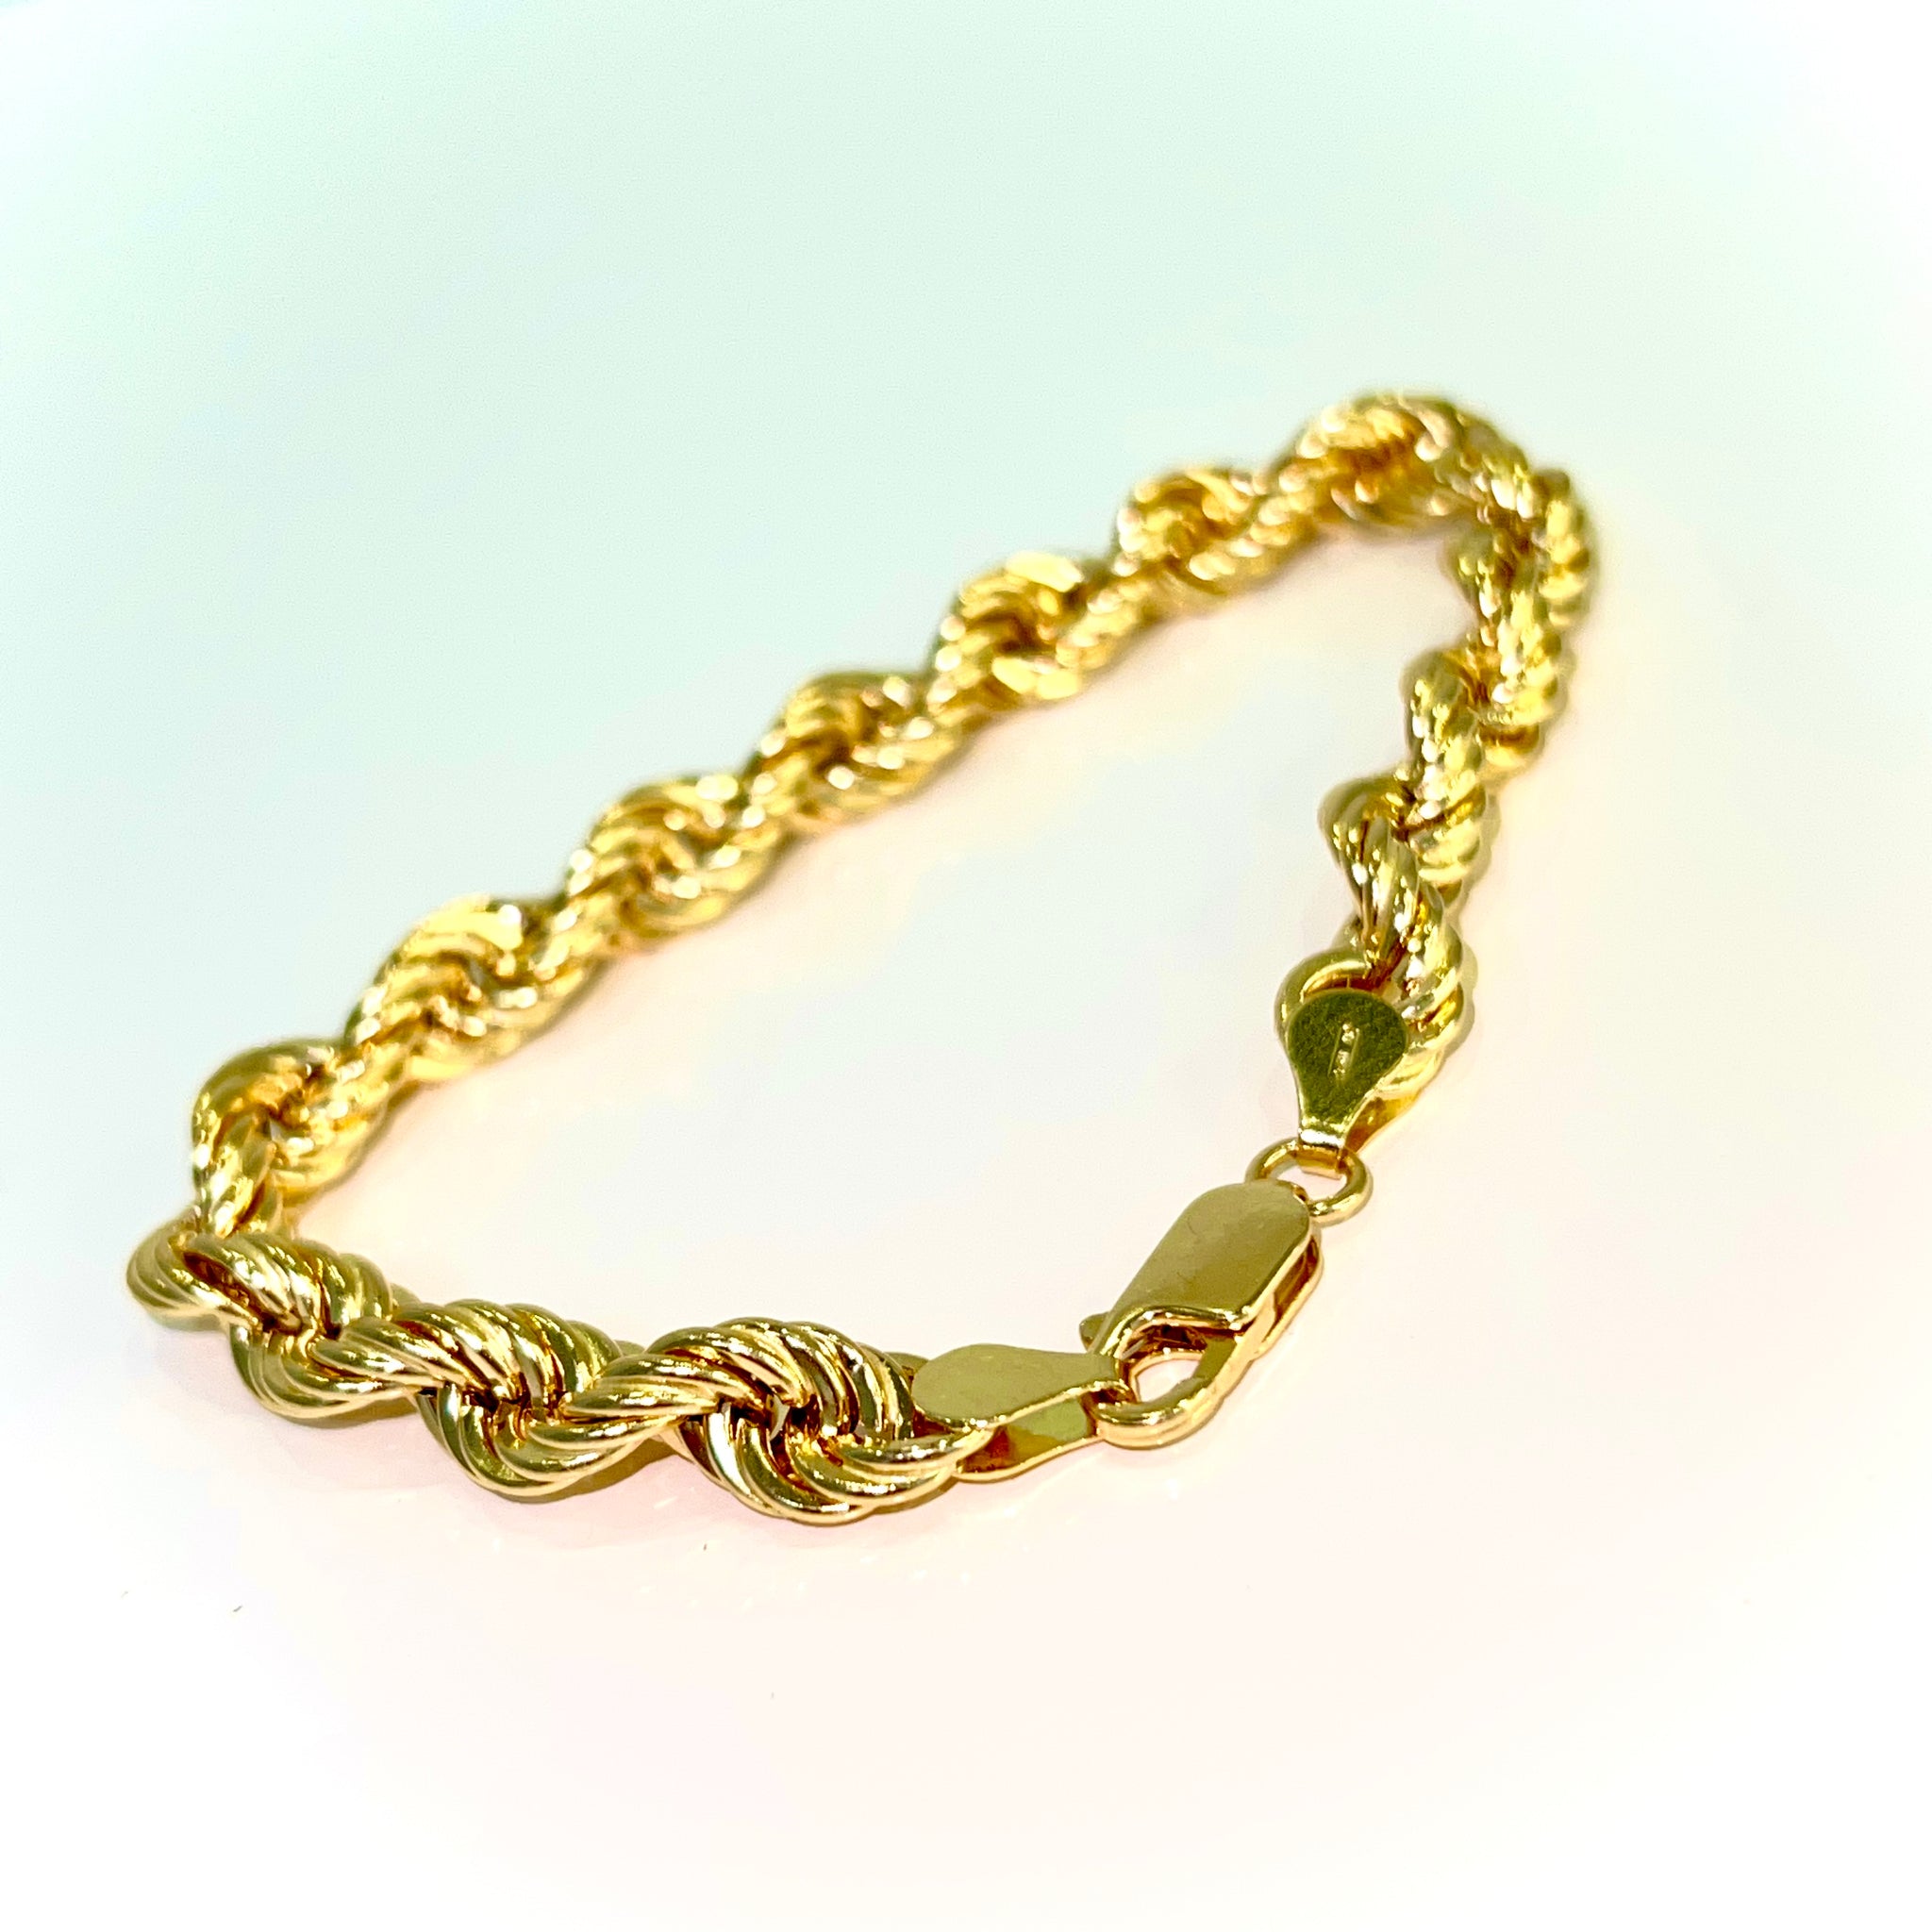 Rope Bracelet 18 Carat Gold - 19cm / 7mm